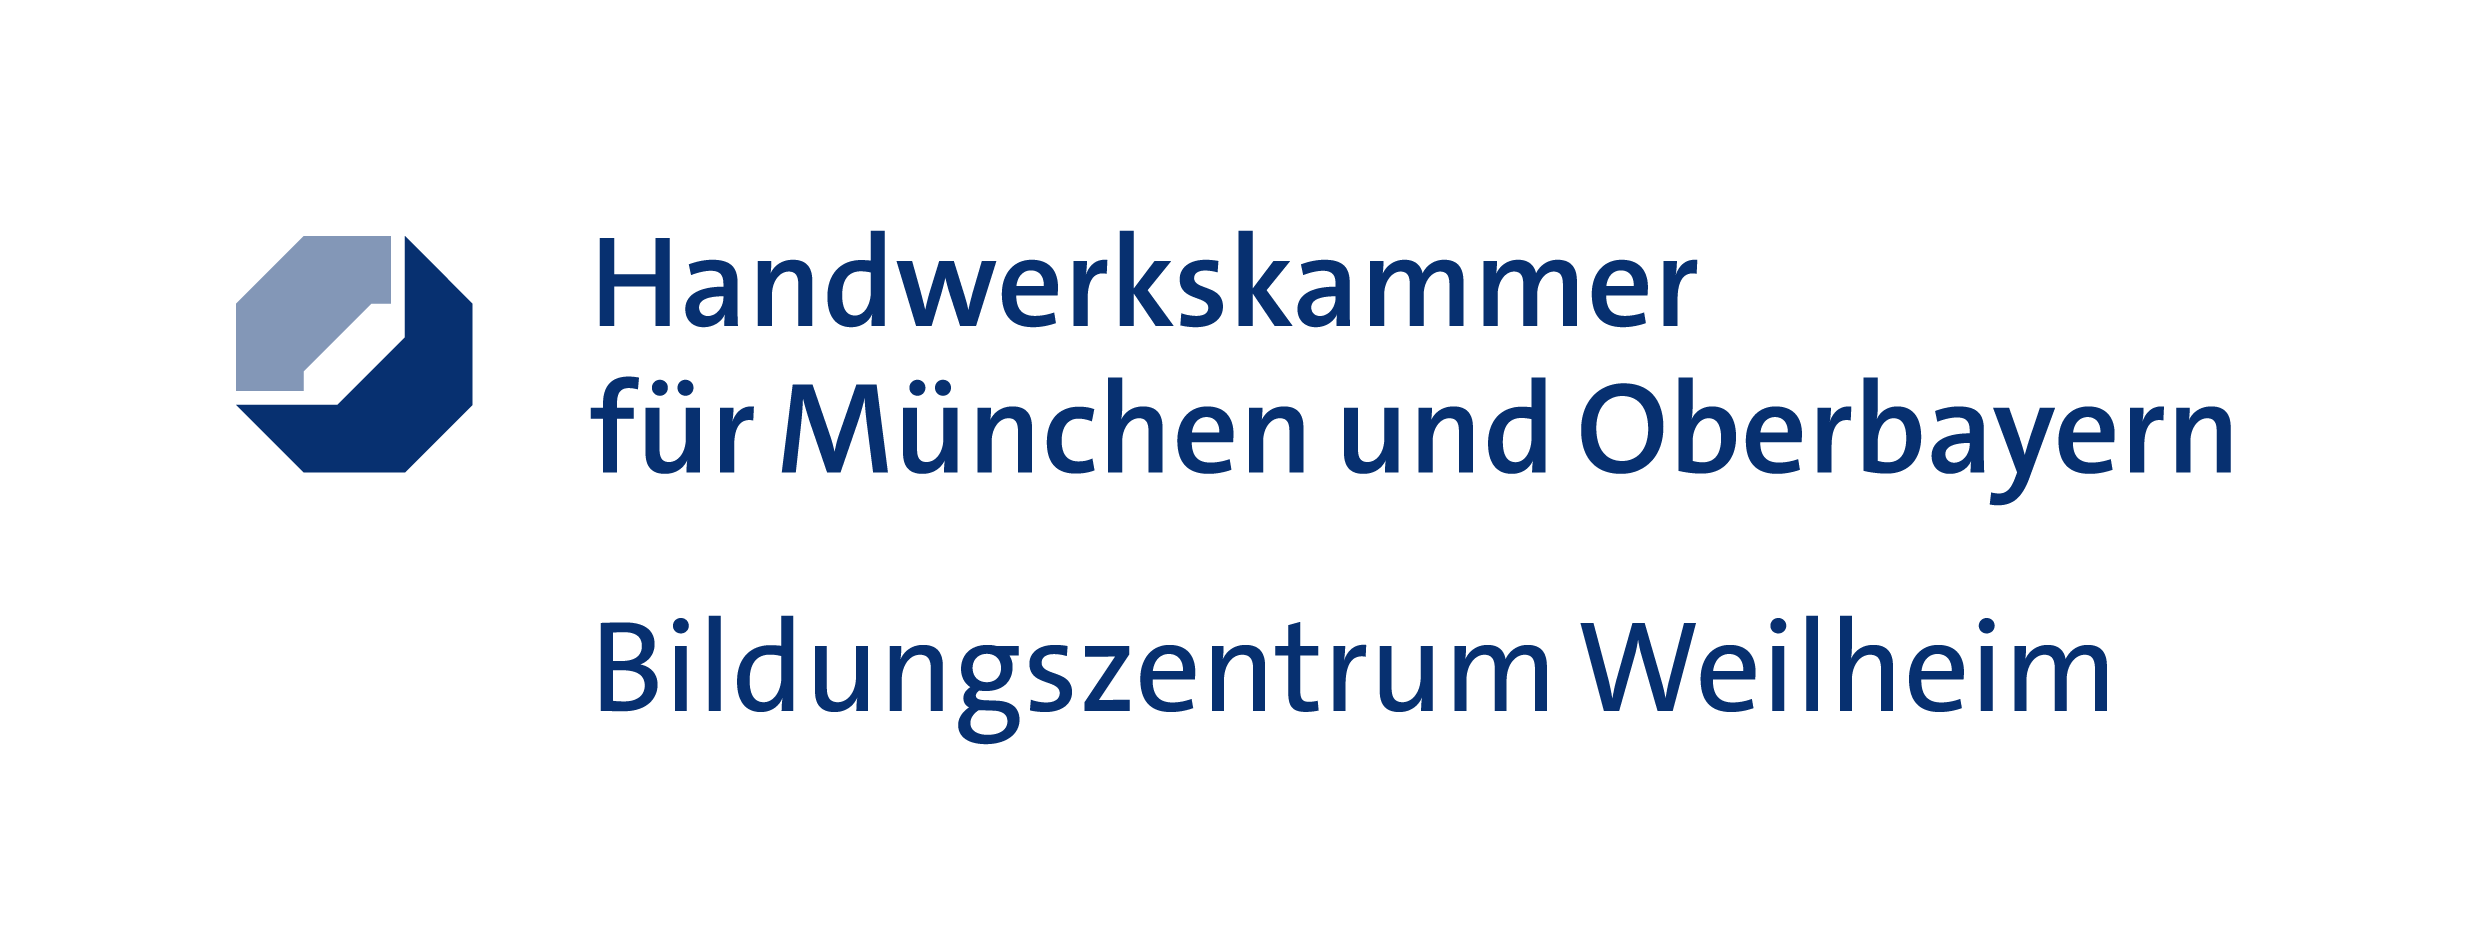 Bild 1 Handwerkskammer für München und Oberbayern in Weilheim i.OB